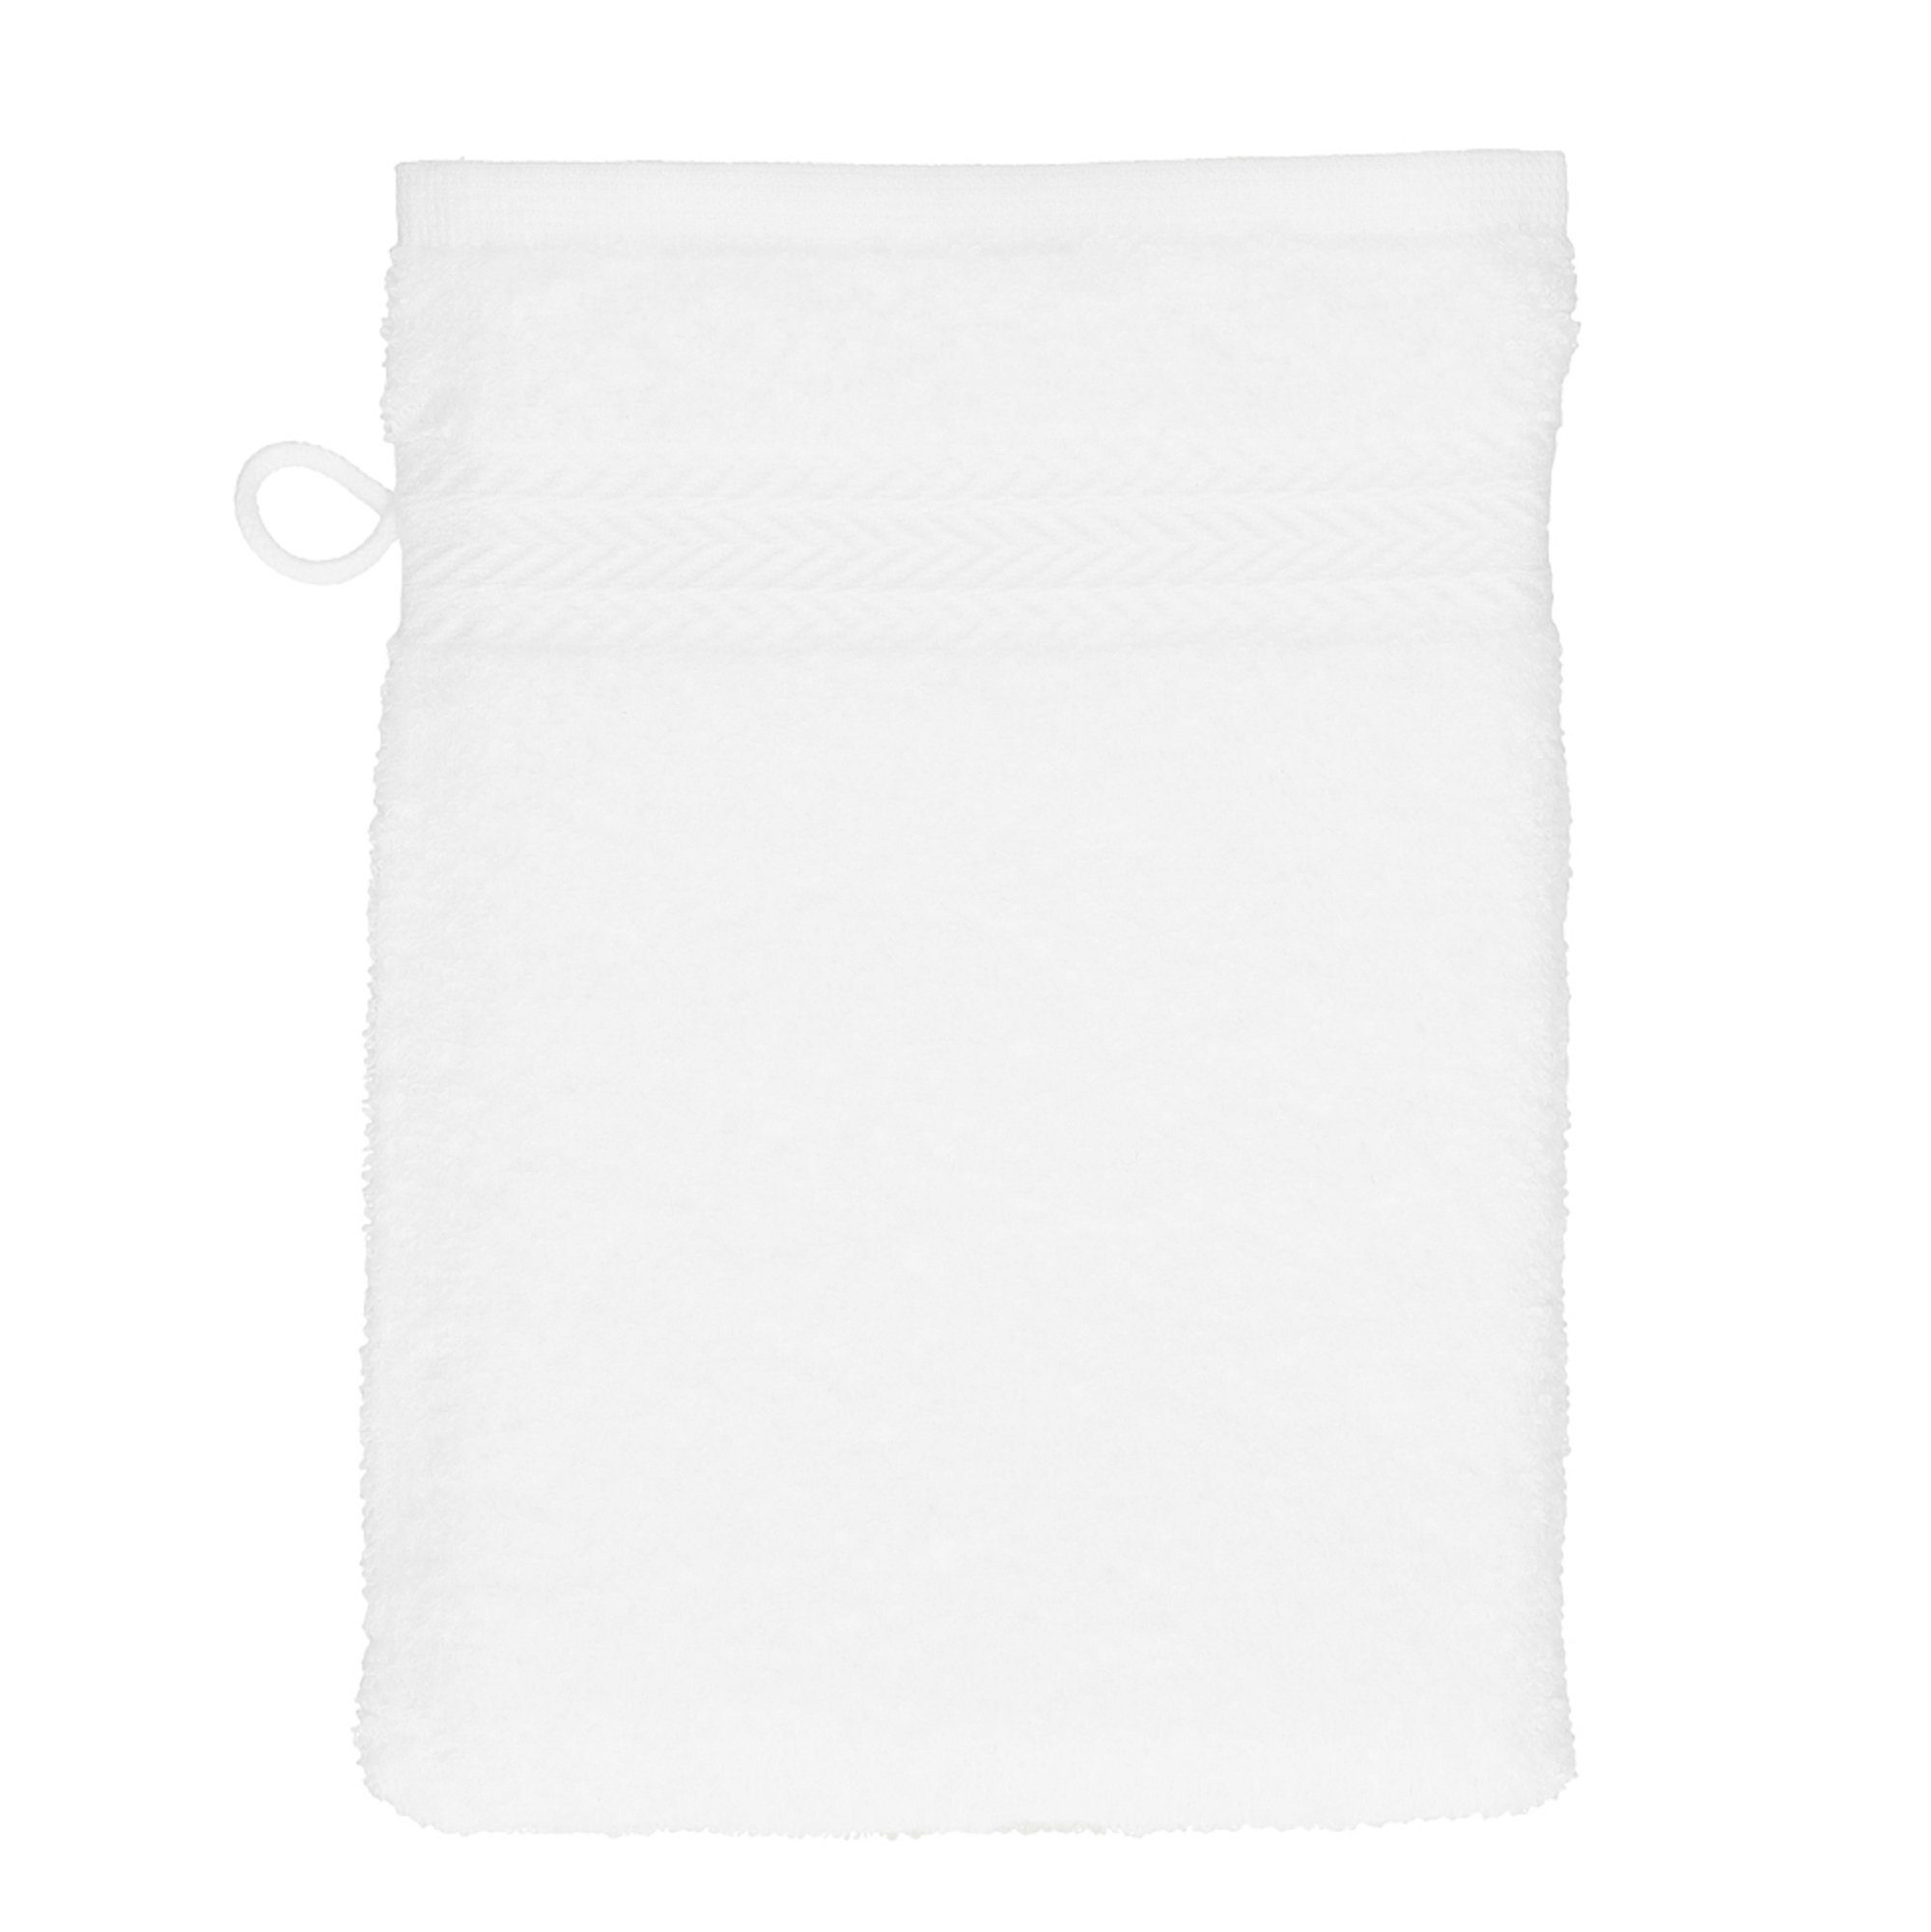 cm Set Waschhandschuh 100% Farbe Premium Baumwolle Waschlappen Waschhandschuhe 16x21 weiß Betz Stück 10 dunkelblau und